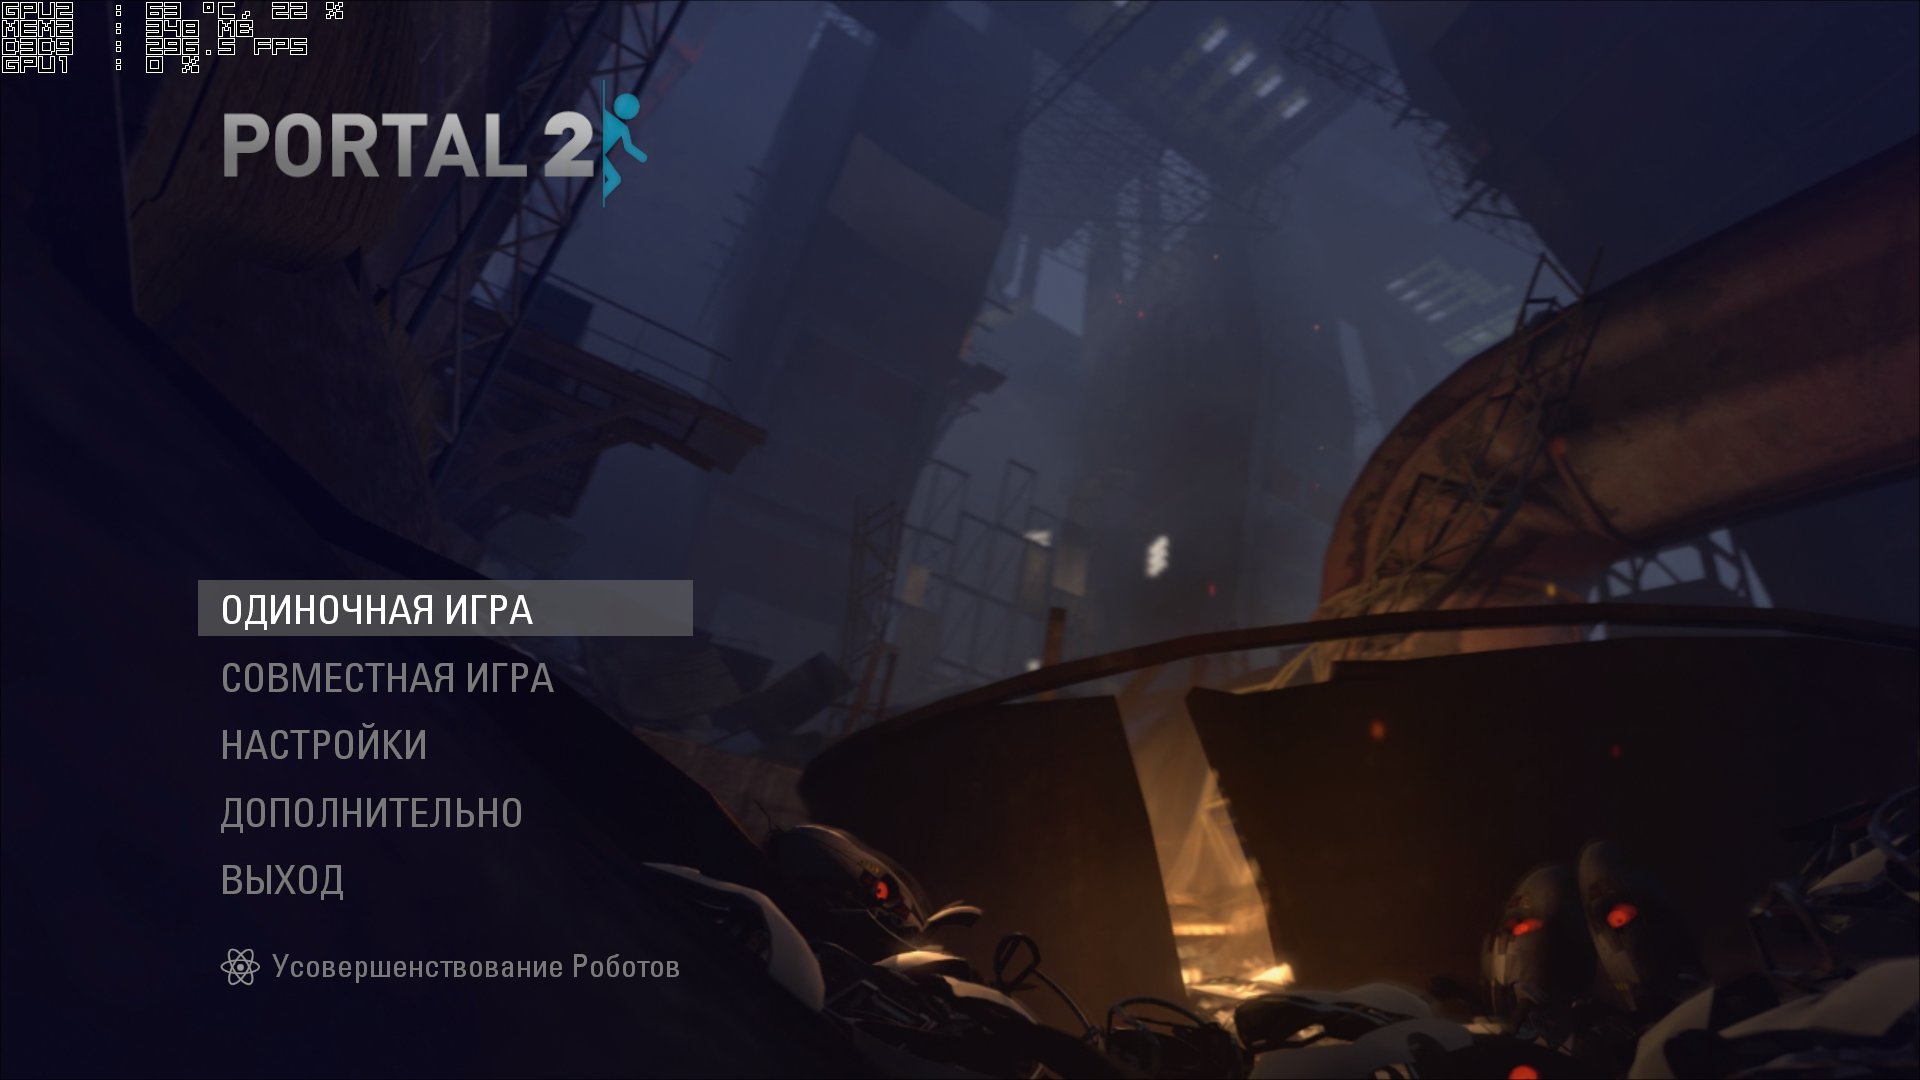 Portal 2 свой сервер фото 72